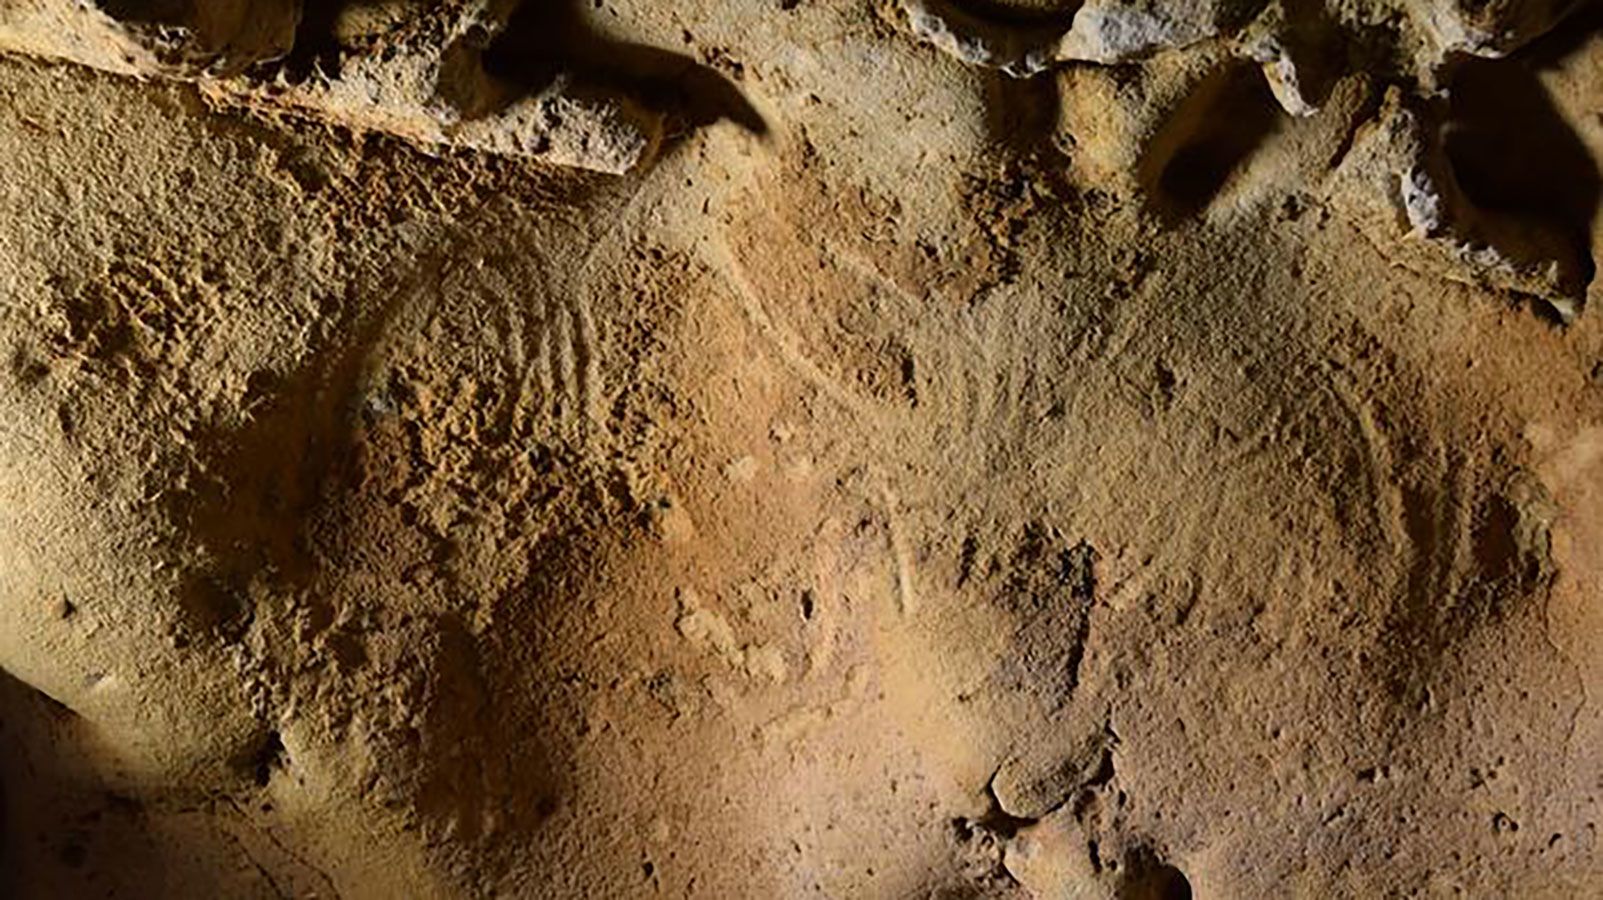 Neandertallased lõid Euroopa vanimad "tahtlikud" graveeringud kuni 75,000 2 aastat tagasi, näitab uuring XNUMX